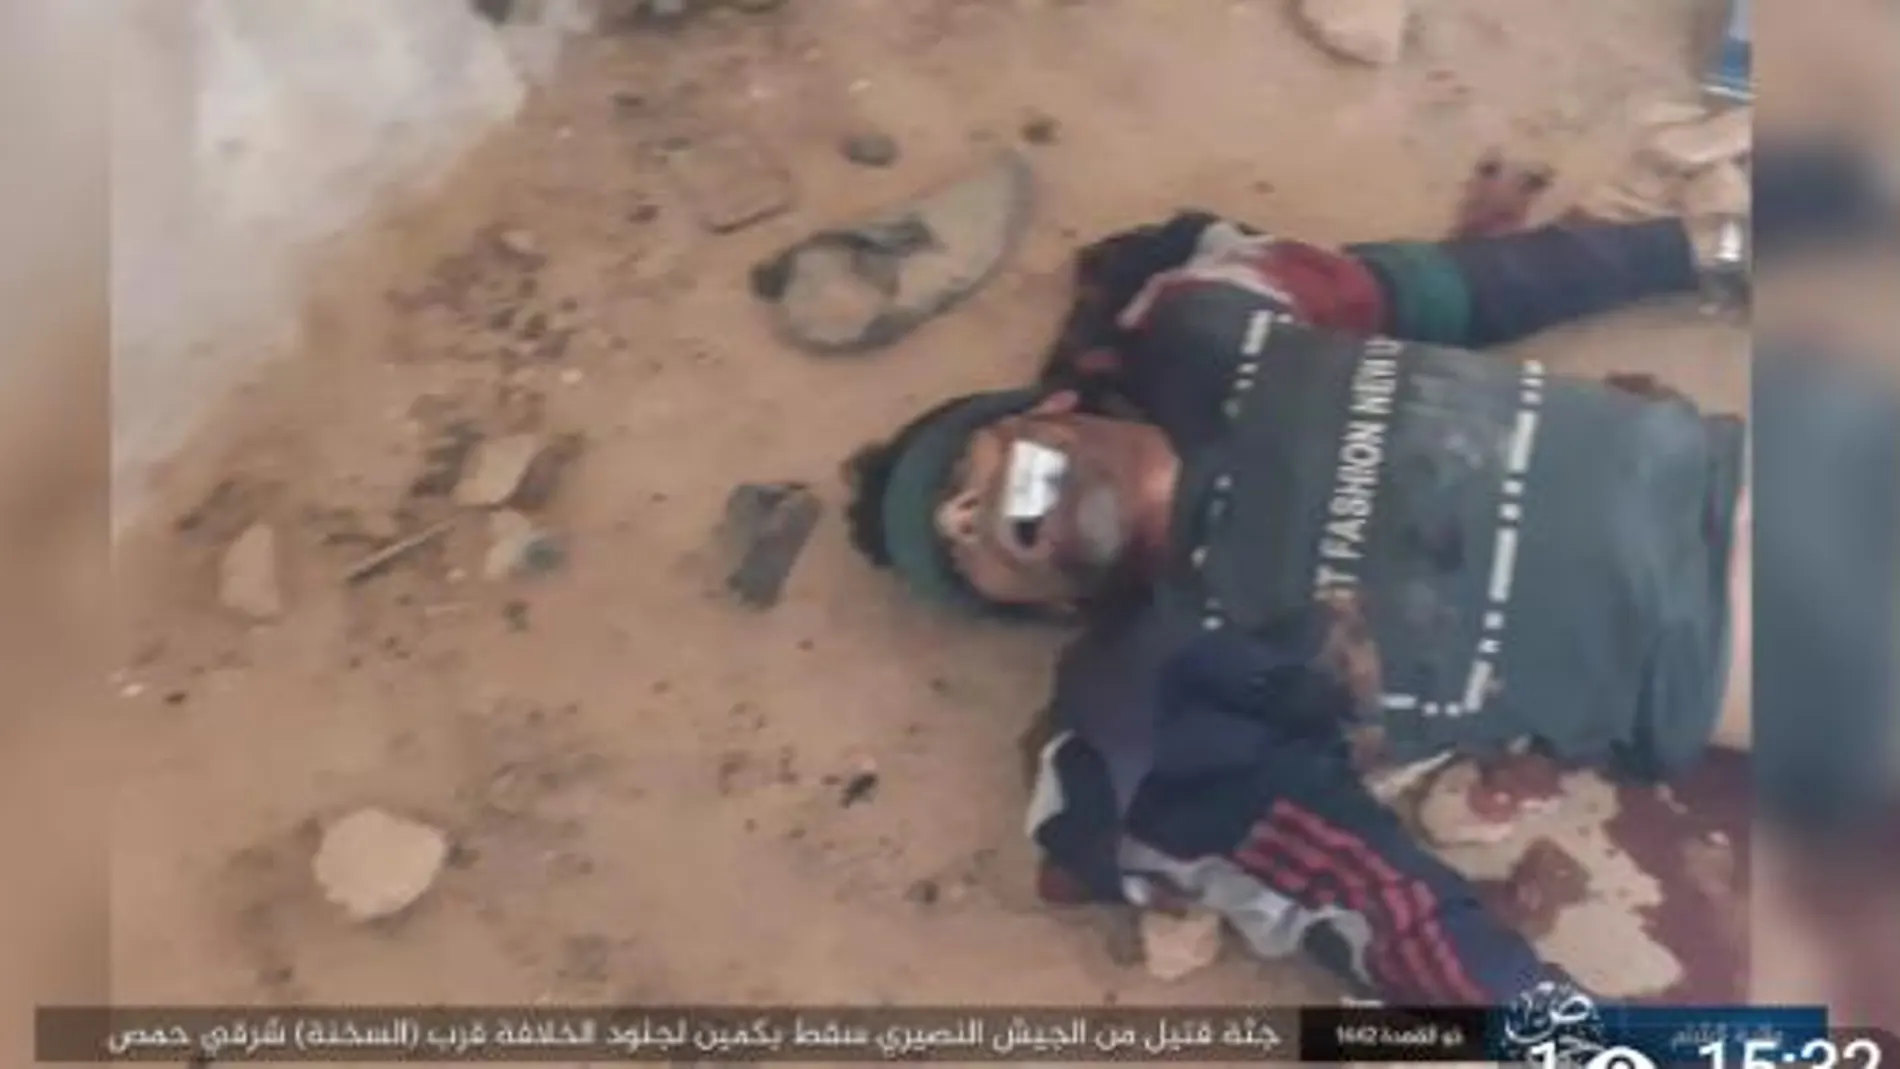 Imagen difundida por Daesh tras el asesinato del oficial sirio